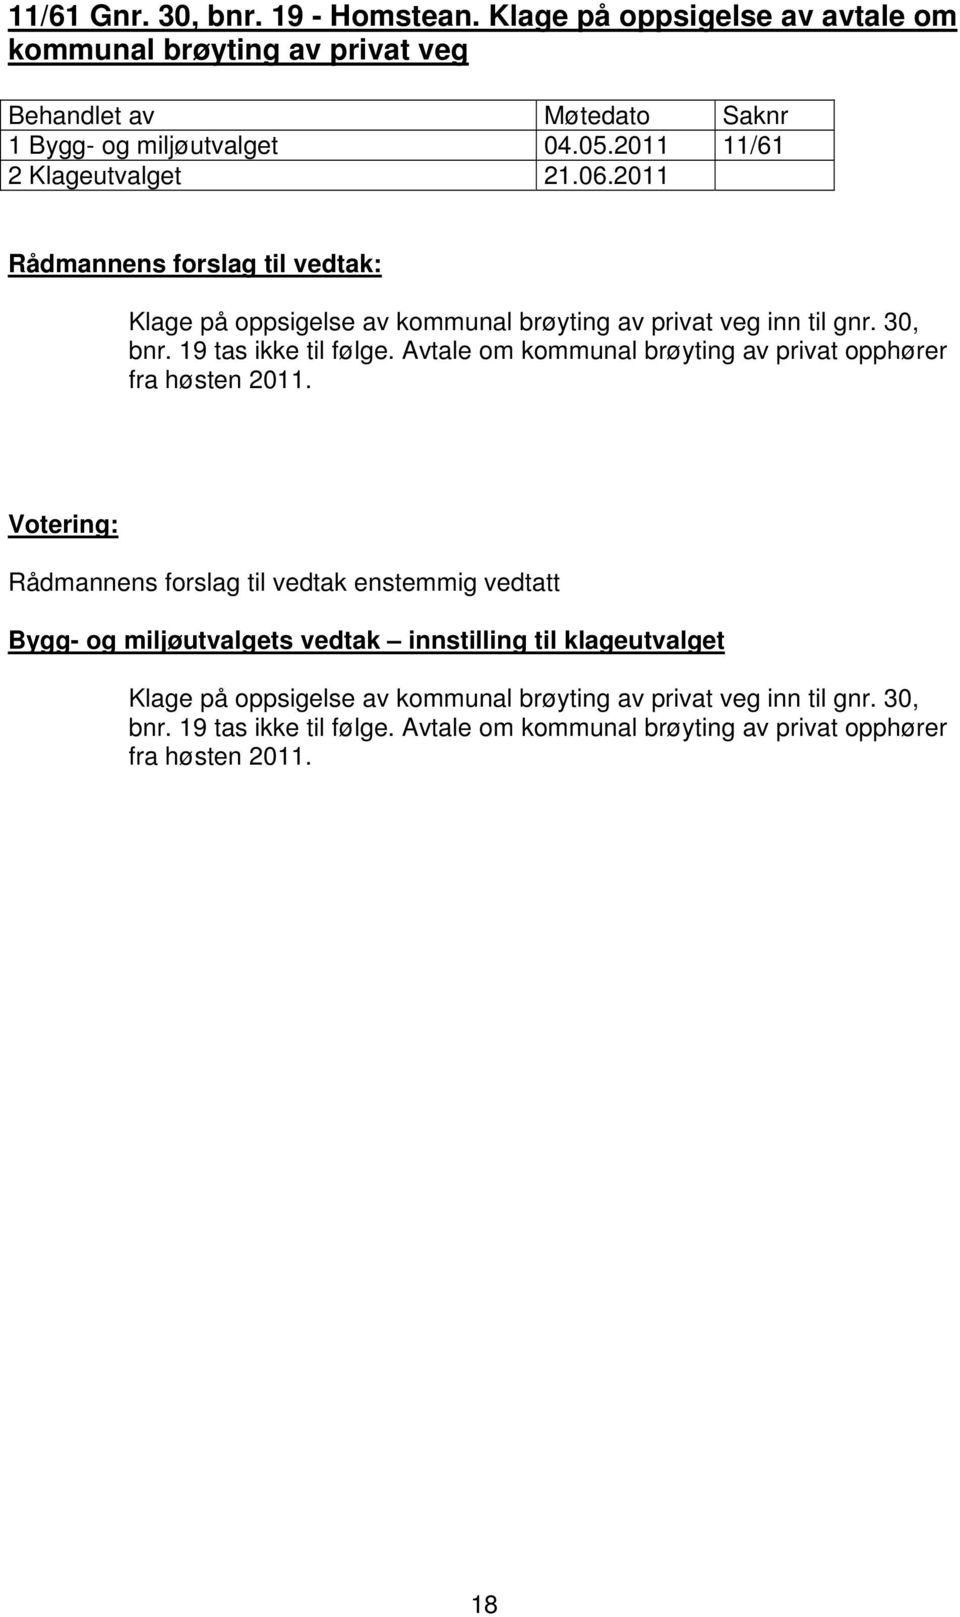 Avtale om kommunal brøyting av privat opphører fra høsten 2011.